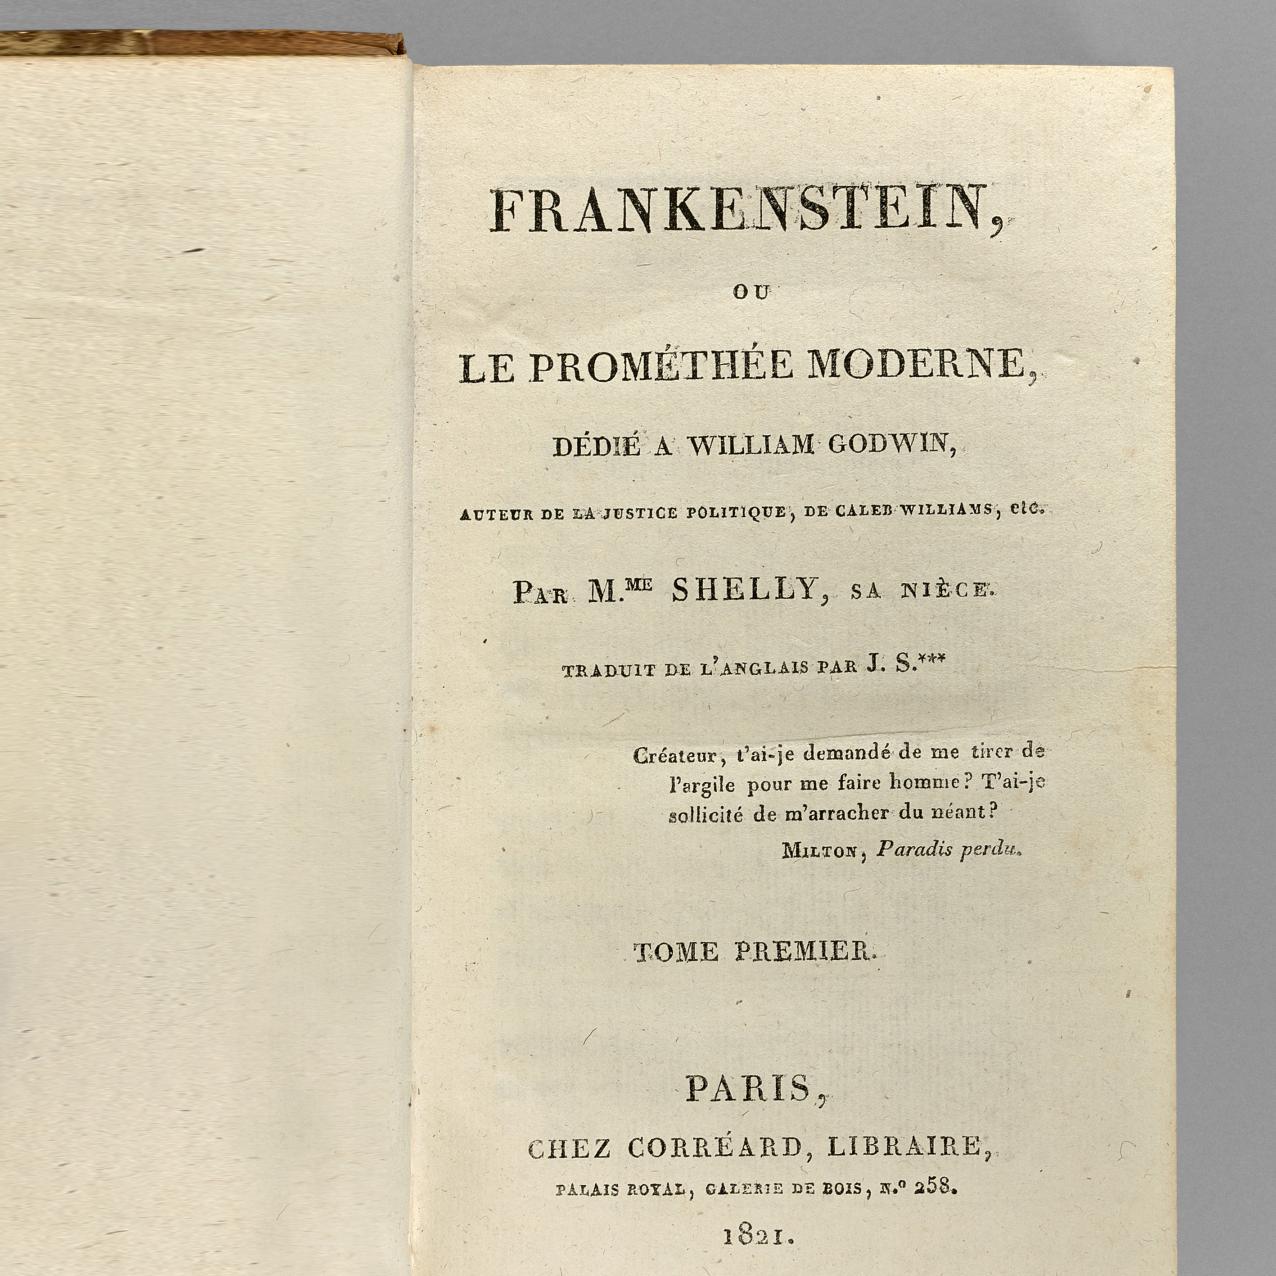 Cote : Frankenstein, plus de 200 ans et toujours aussi actuel - Cotes et tendances